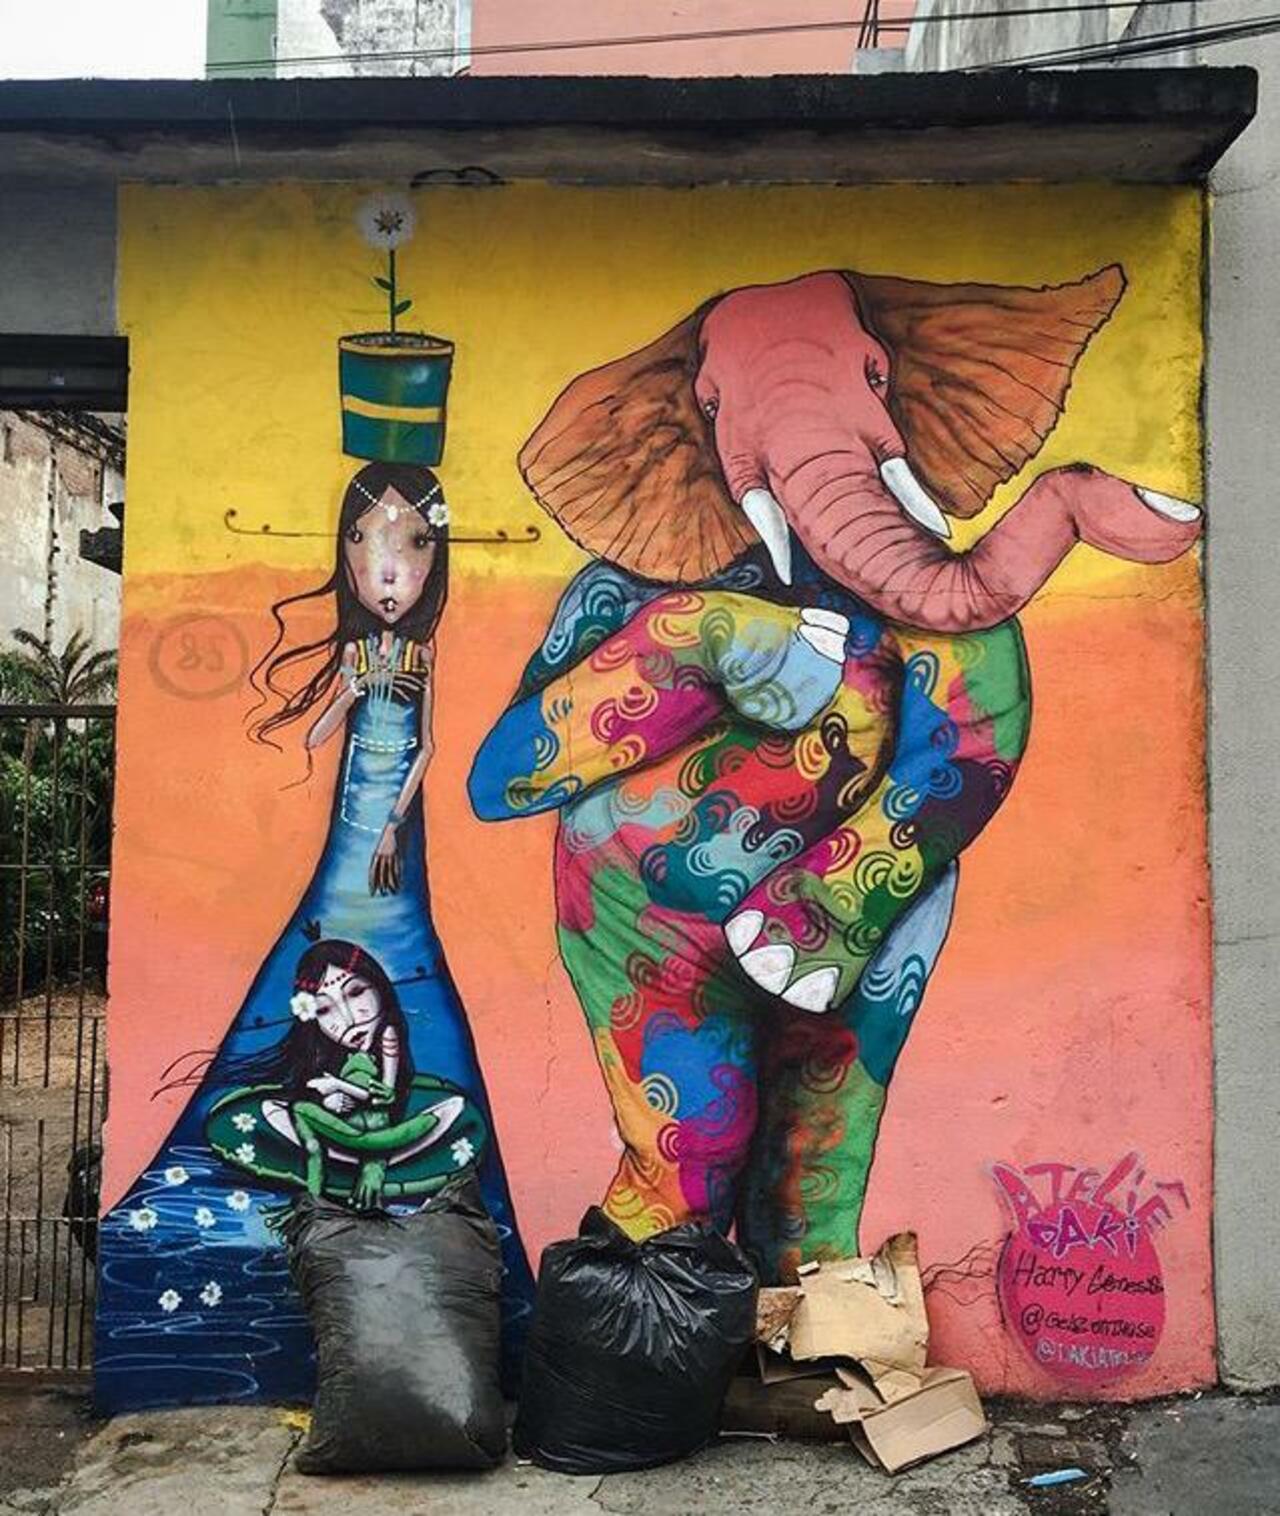 Street Art by Harry Geneis & Gelson in São Paulo 

#art #mural #graffiti #streetart http://t.co/6LOHpkqBmb